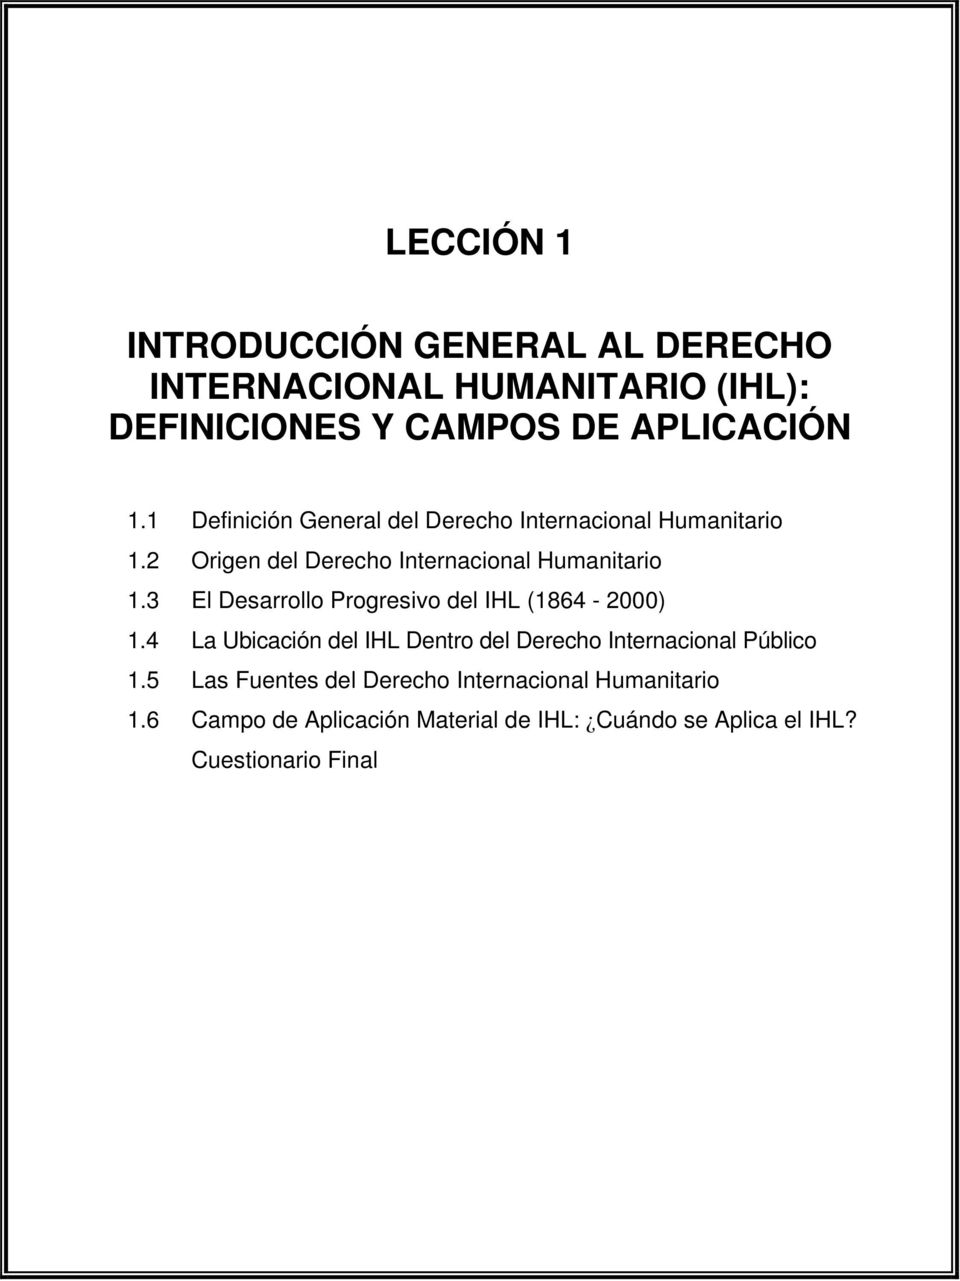 3 El Desarrollo Progresivo del IHL (1864-2000) 1.4 La Ubicación del IHL Dentro del Derecho Internacional Público 1.